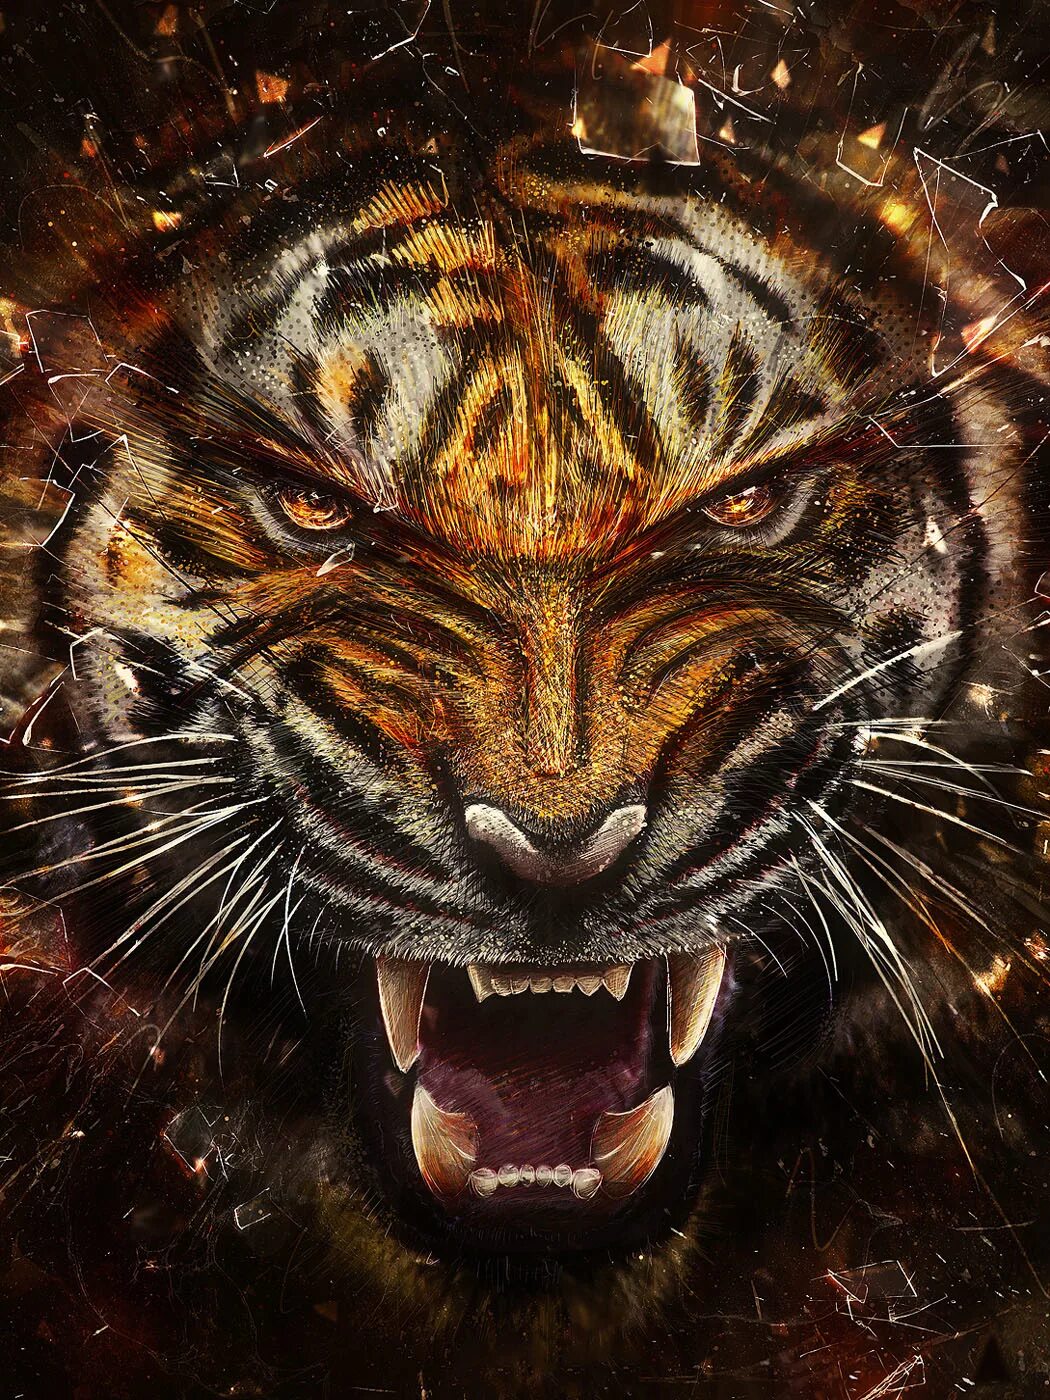 Заставки на телефон тиграми бесплатные. Тигр. Оскал тигра. Злой тигр. Тигр агрессивный.